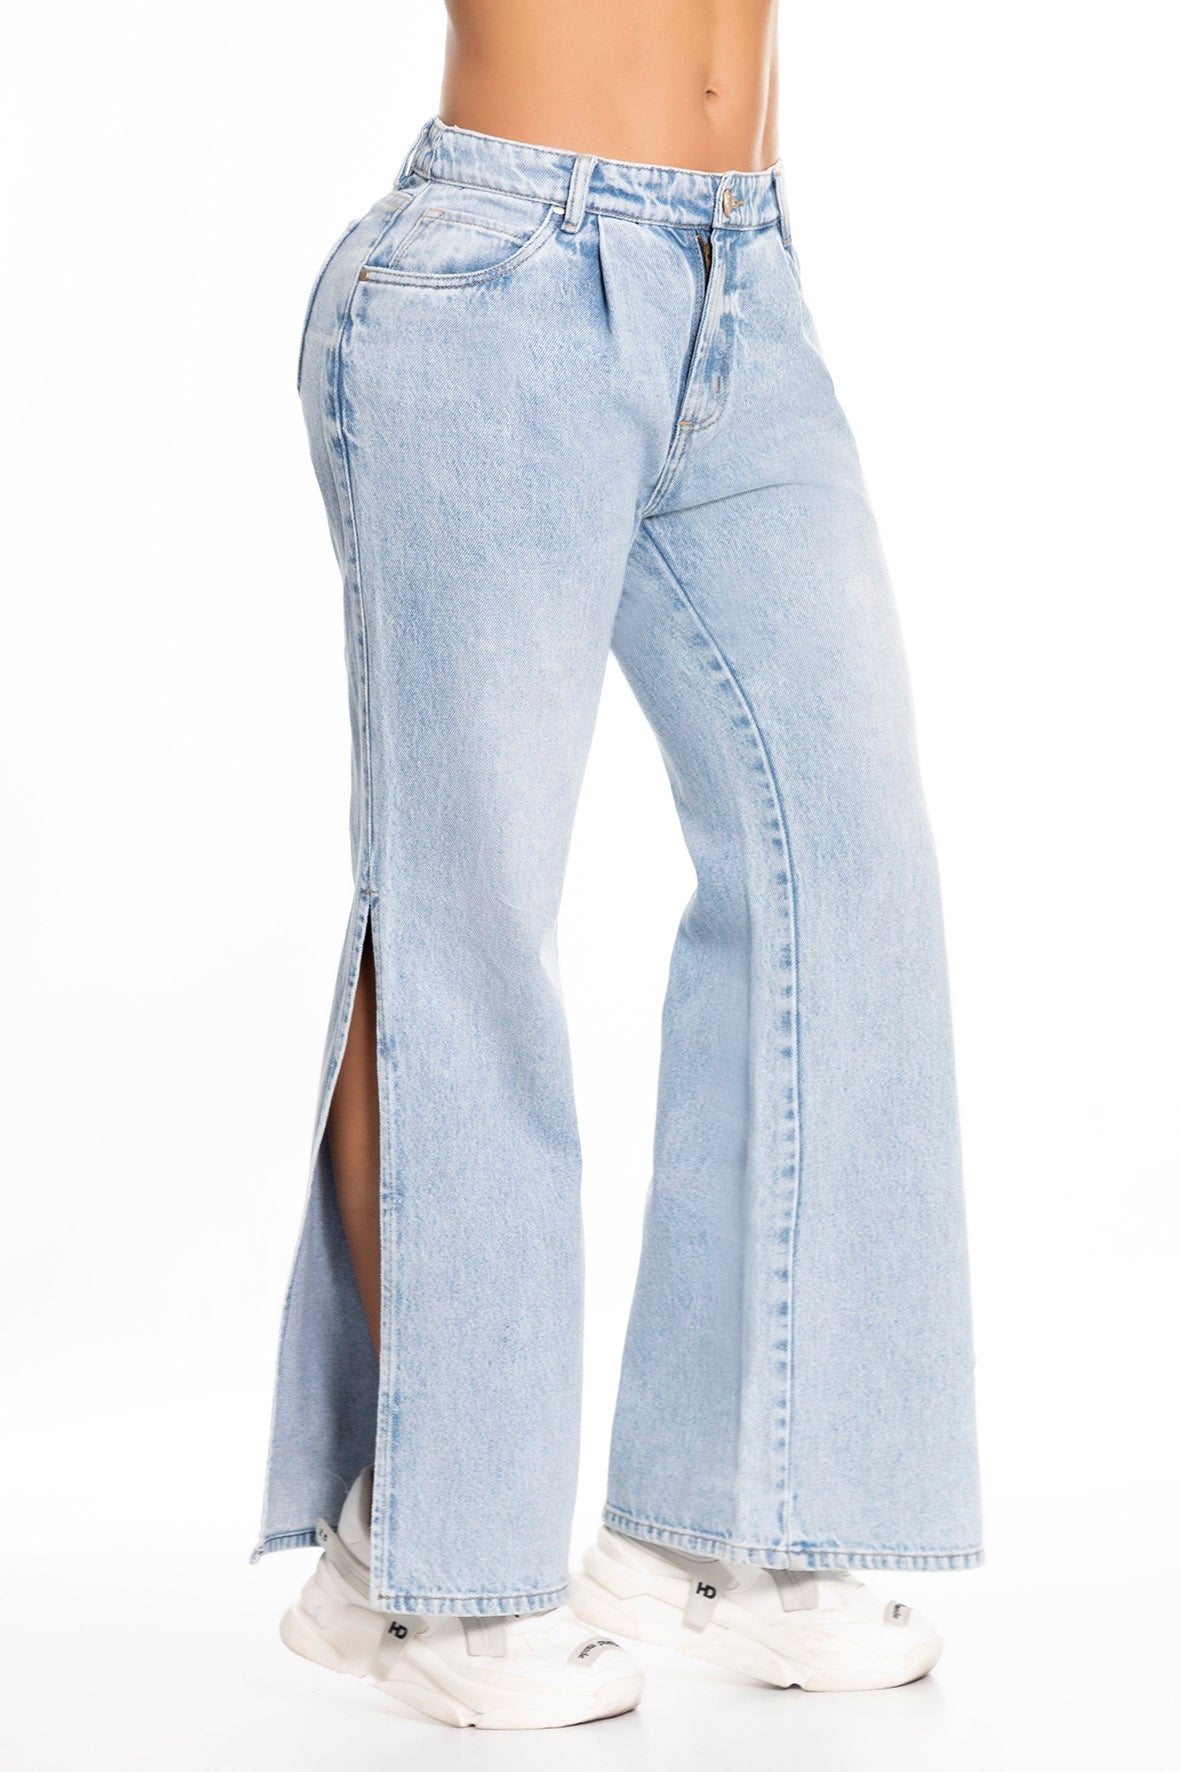 Ref. 10054 Jean rígido,tiro alto, bolsillos laterales, abertura en piernas, tono azul claro (hielo)